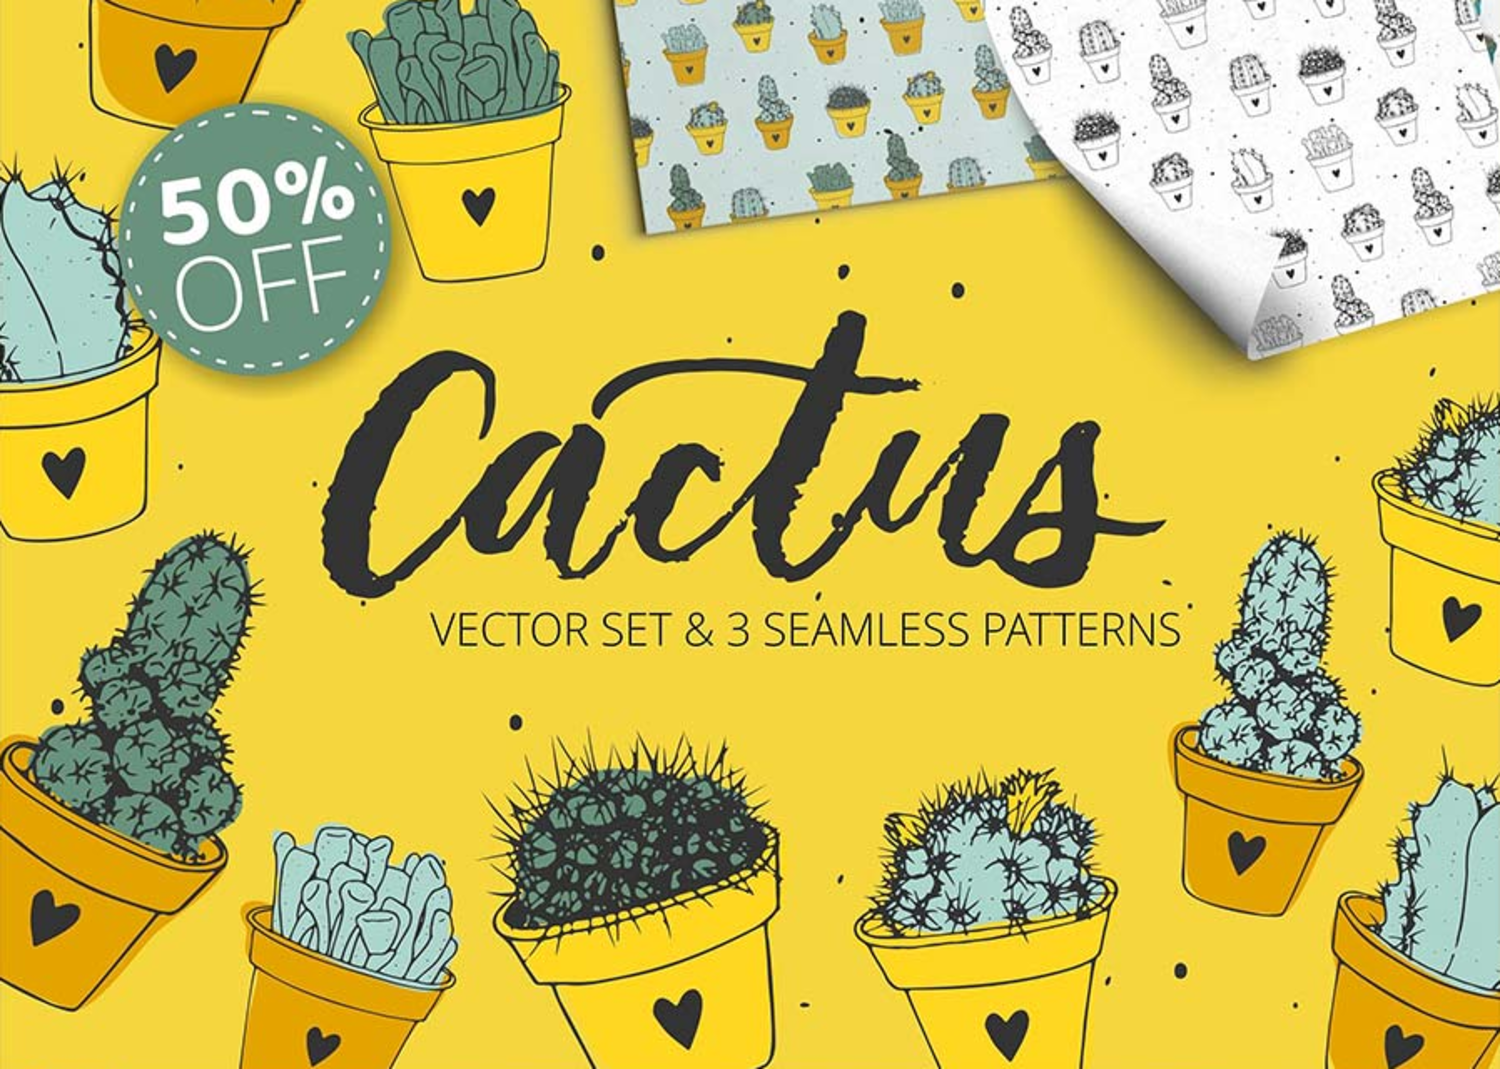 24 矢量仙人掌无缝背景插图素材 Handdrawn_cactus_vector_set